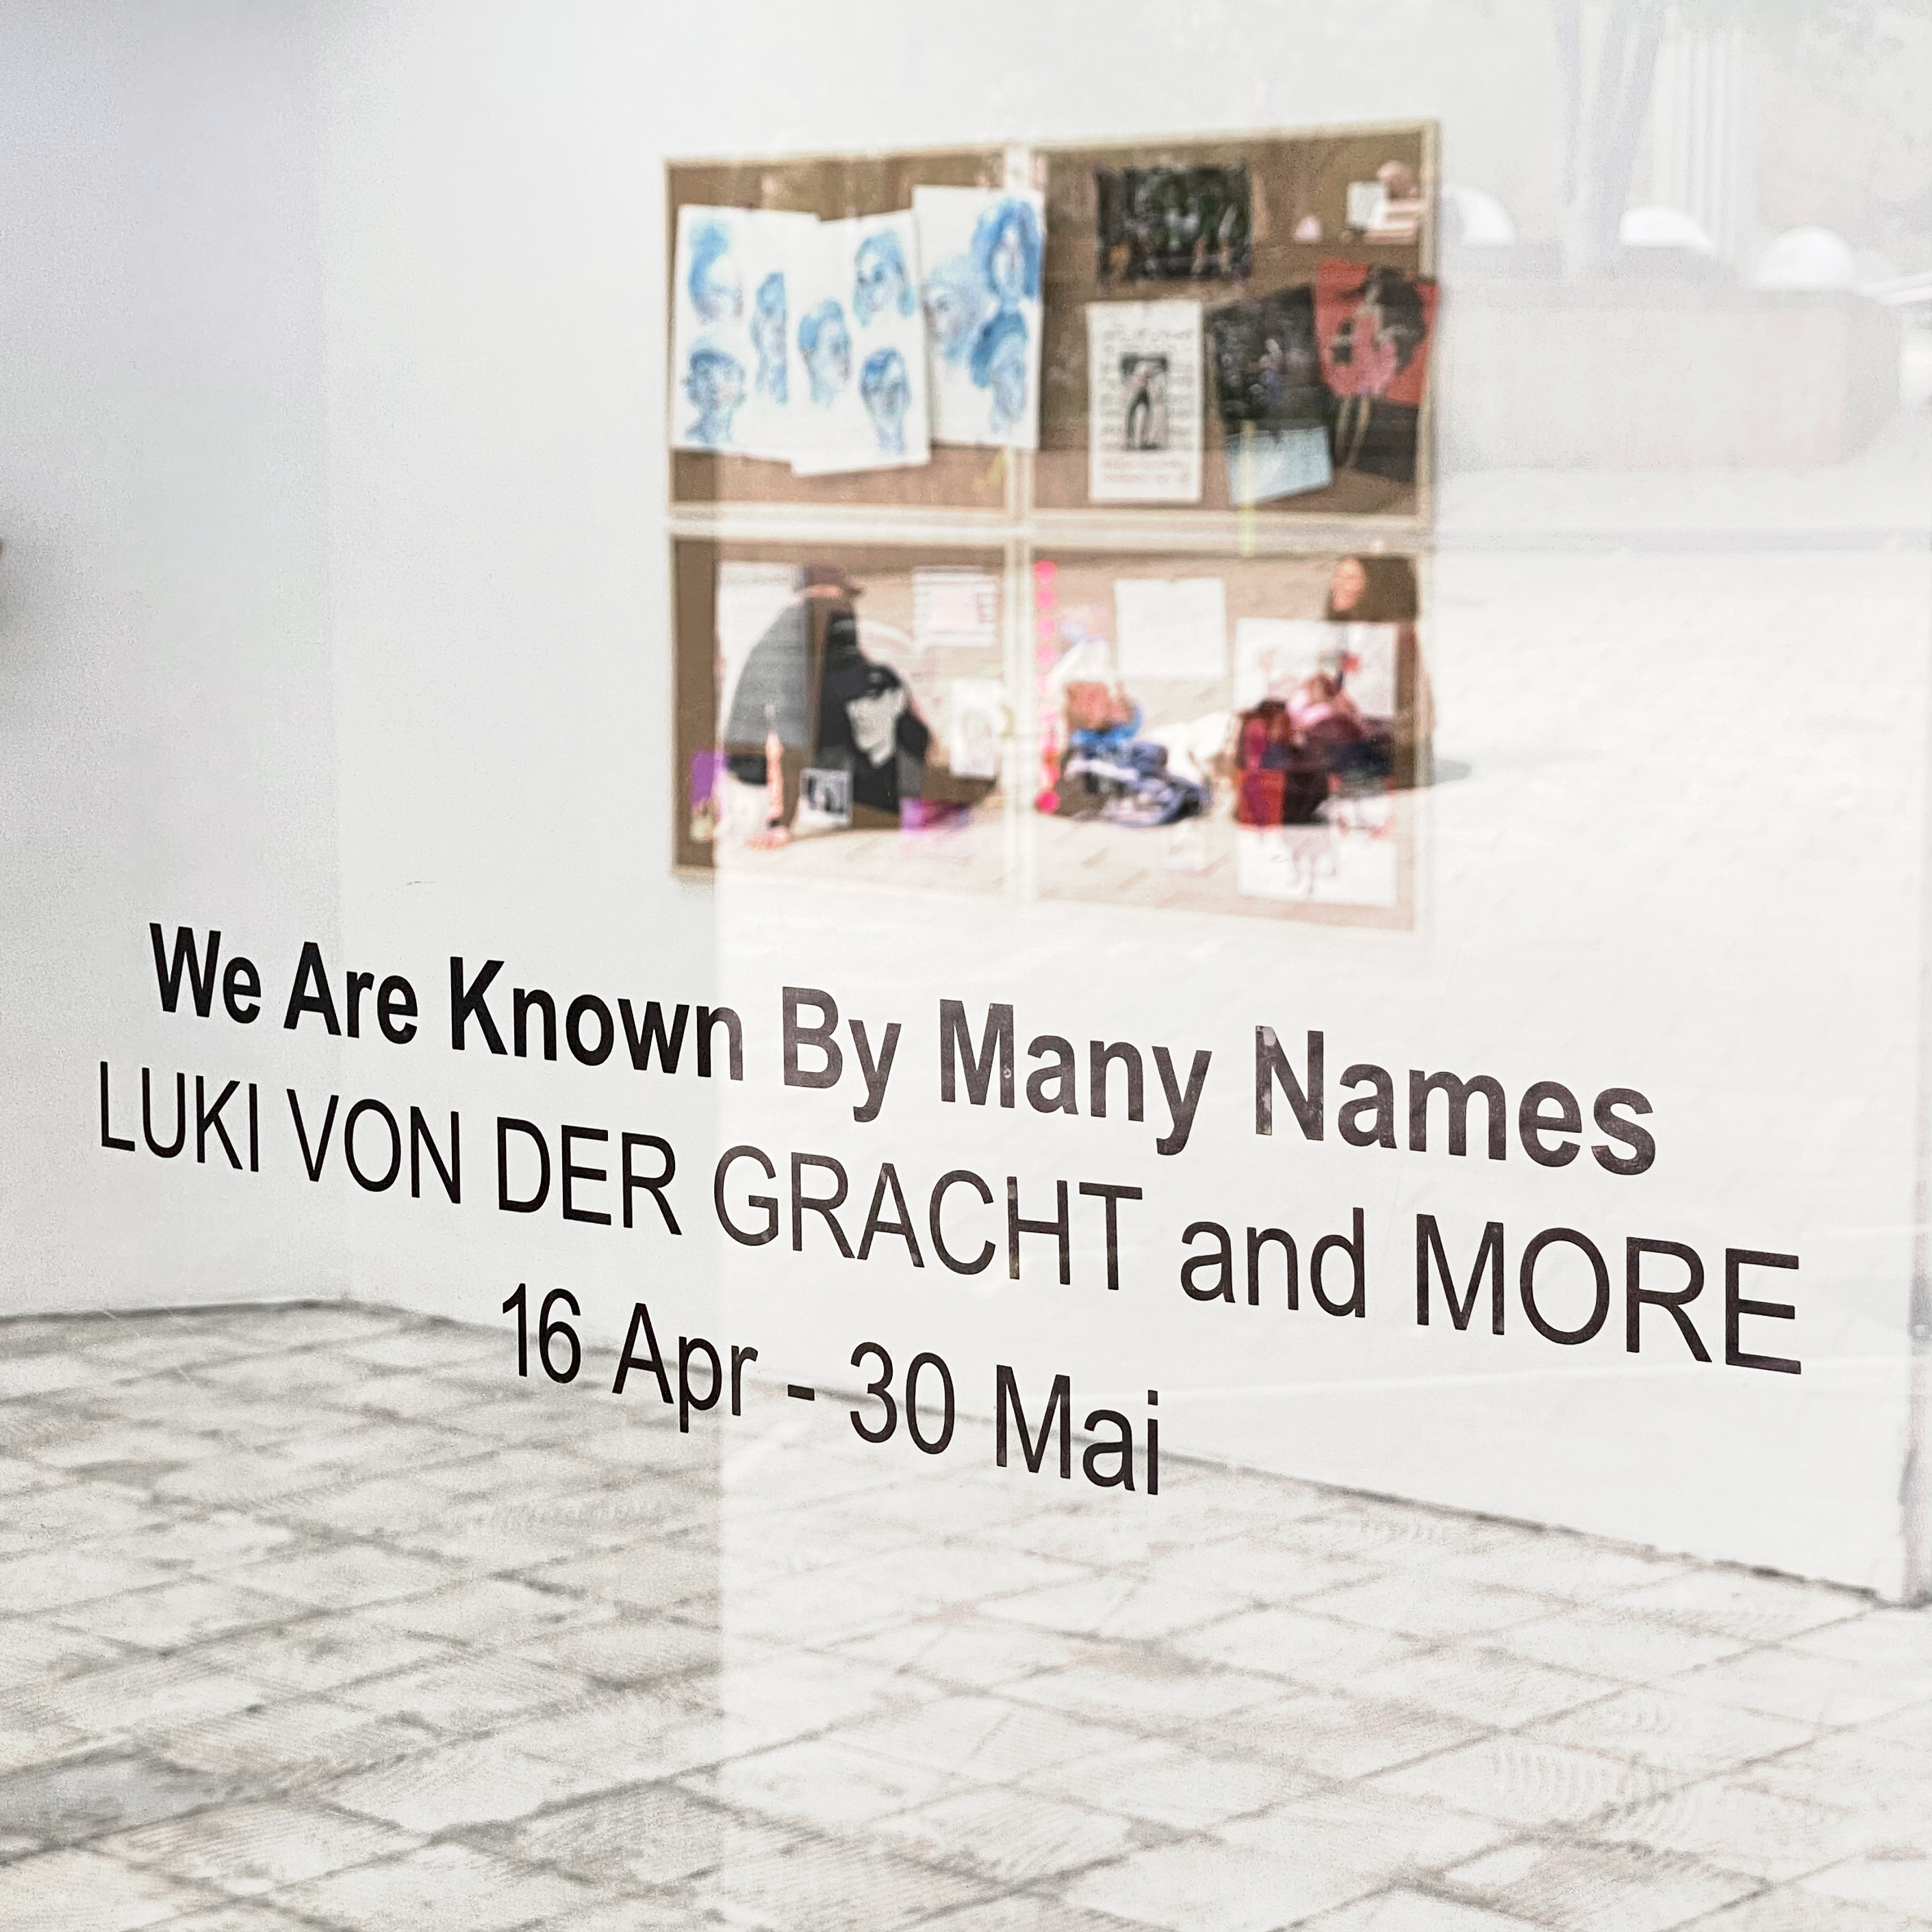 Luki von der Gracht We Are Known By Many Names